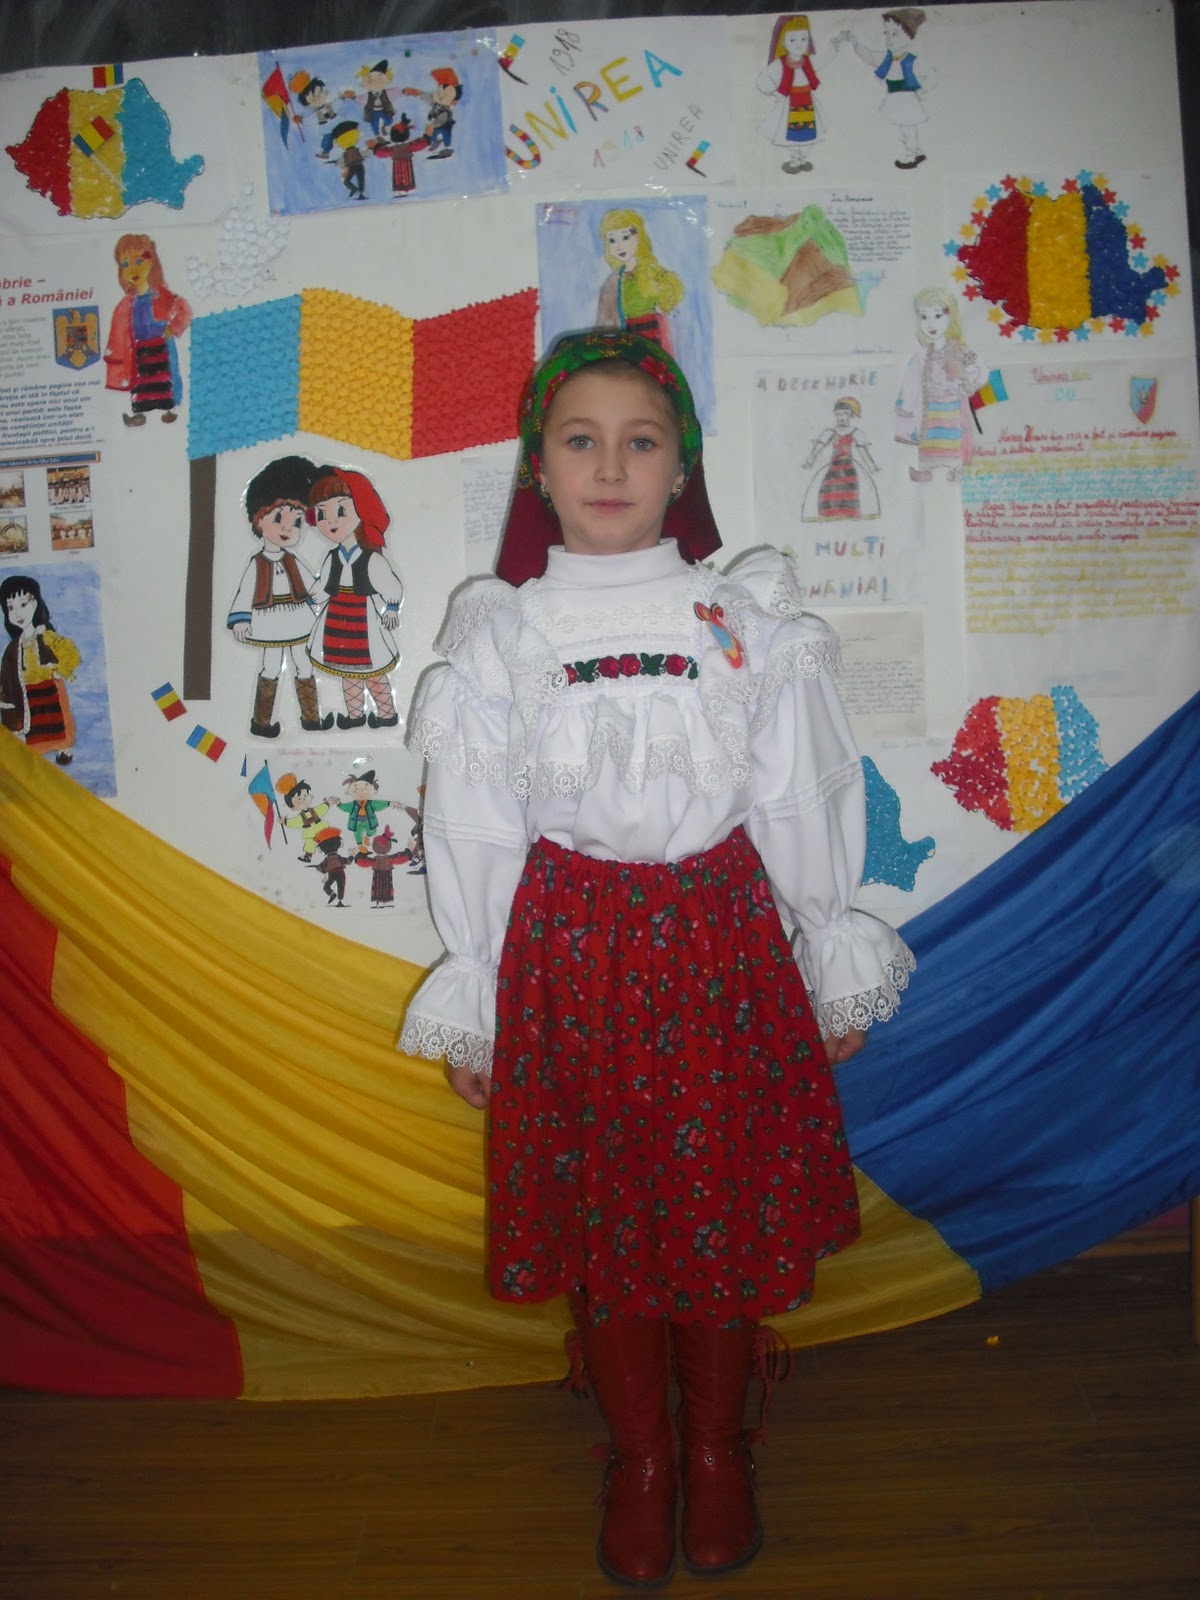 Clasa noastra: 1 Decembrie - ziua naţională a României